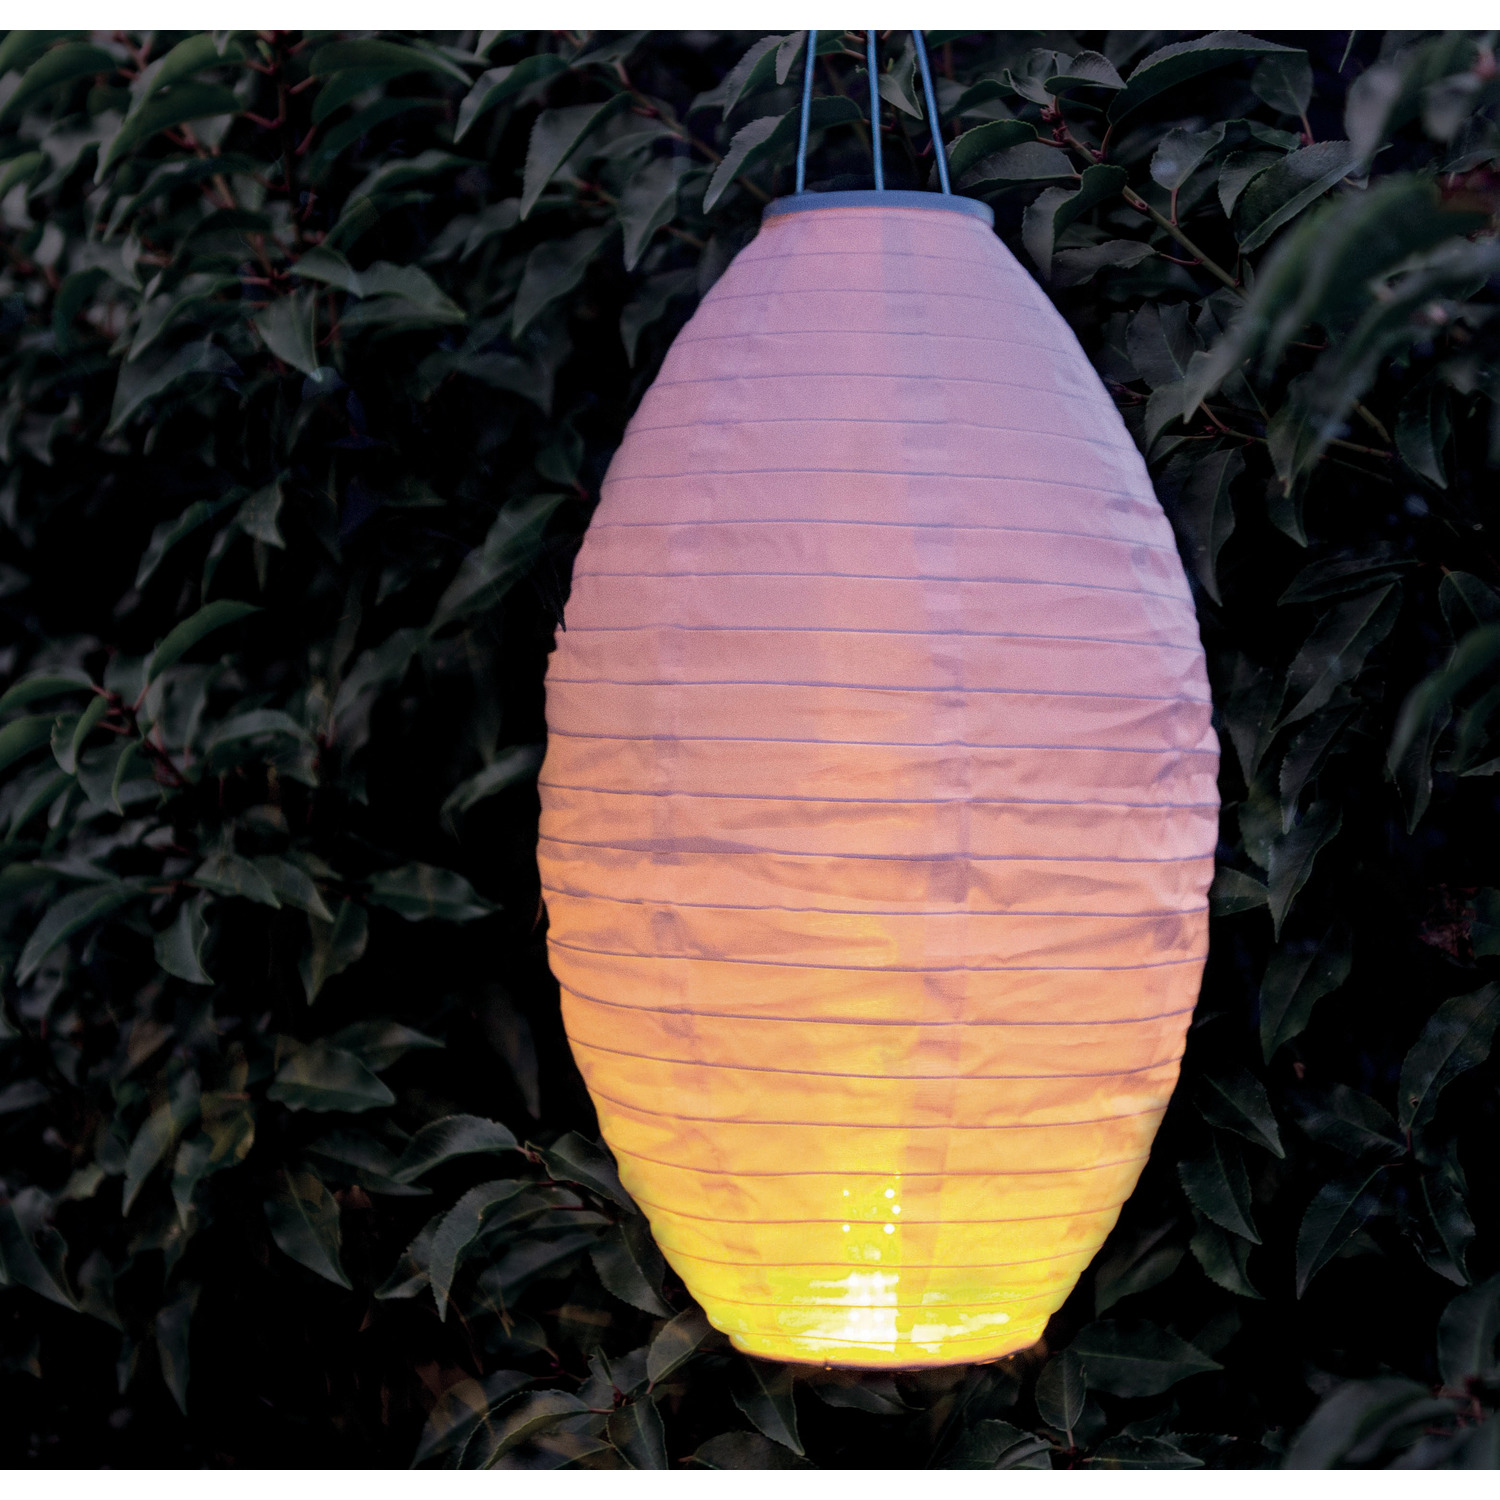 9x stuks luxe solar lampion/lampionnen wit met realistisch vlameffect 30 x 50 cm